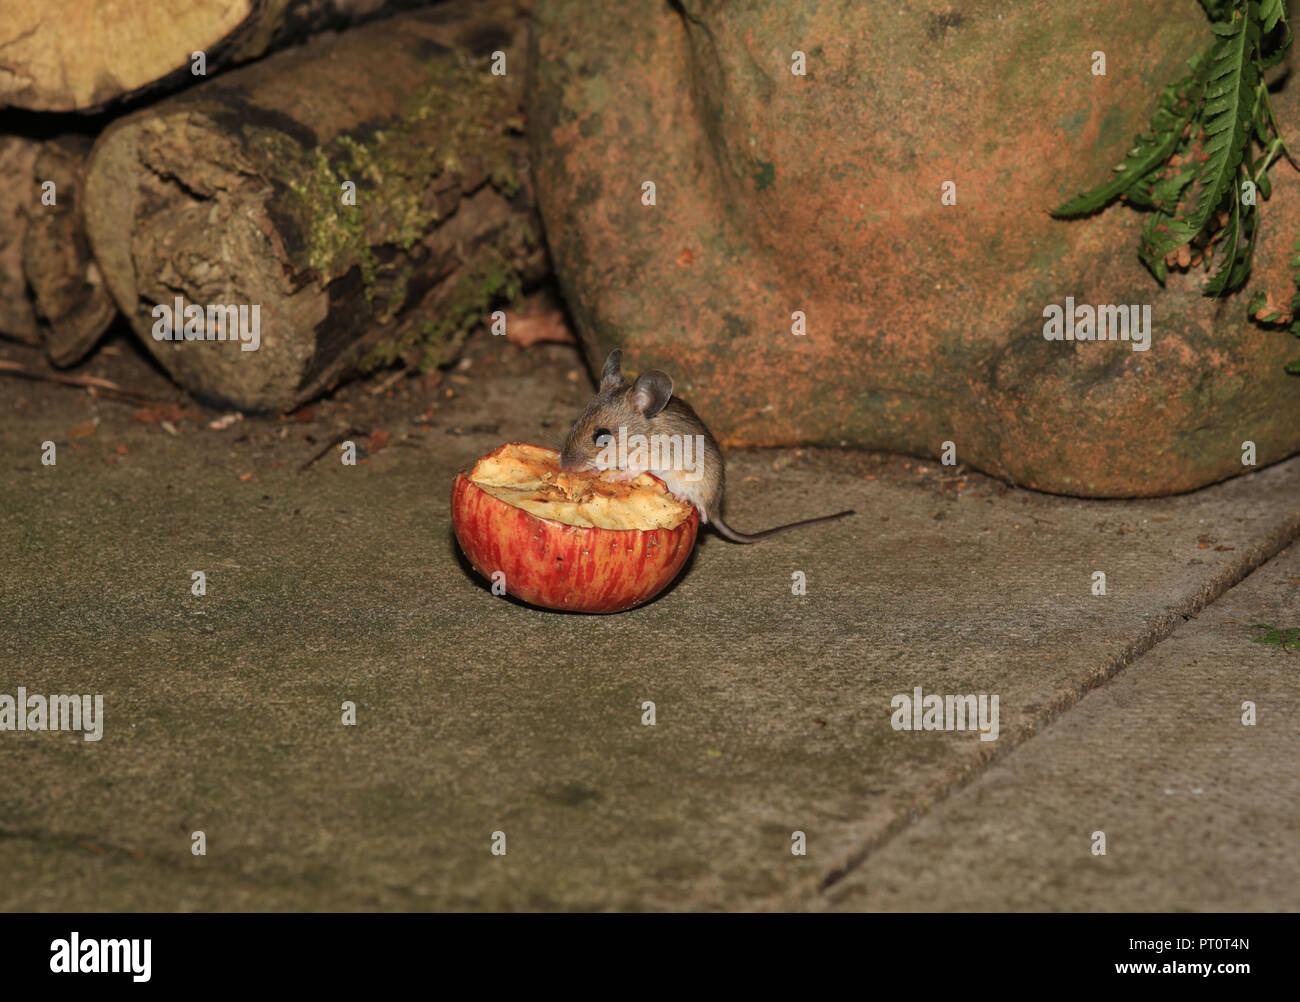 Les jeunes souris Bois (Apodemus sylvaticus) se nourrissent d'une demi-pomme dans un jardin britannique. Banque D'Images